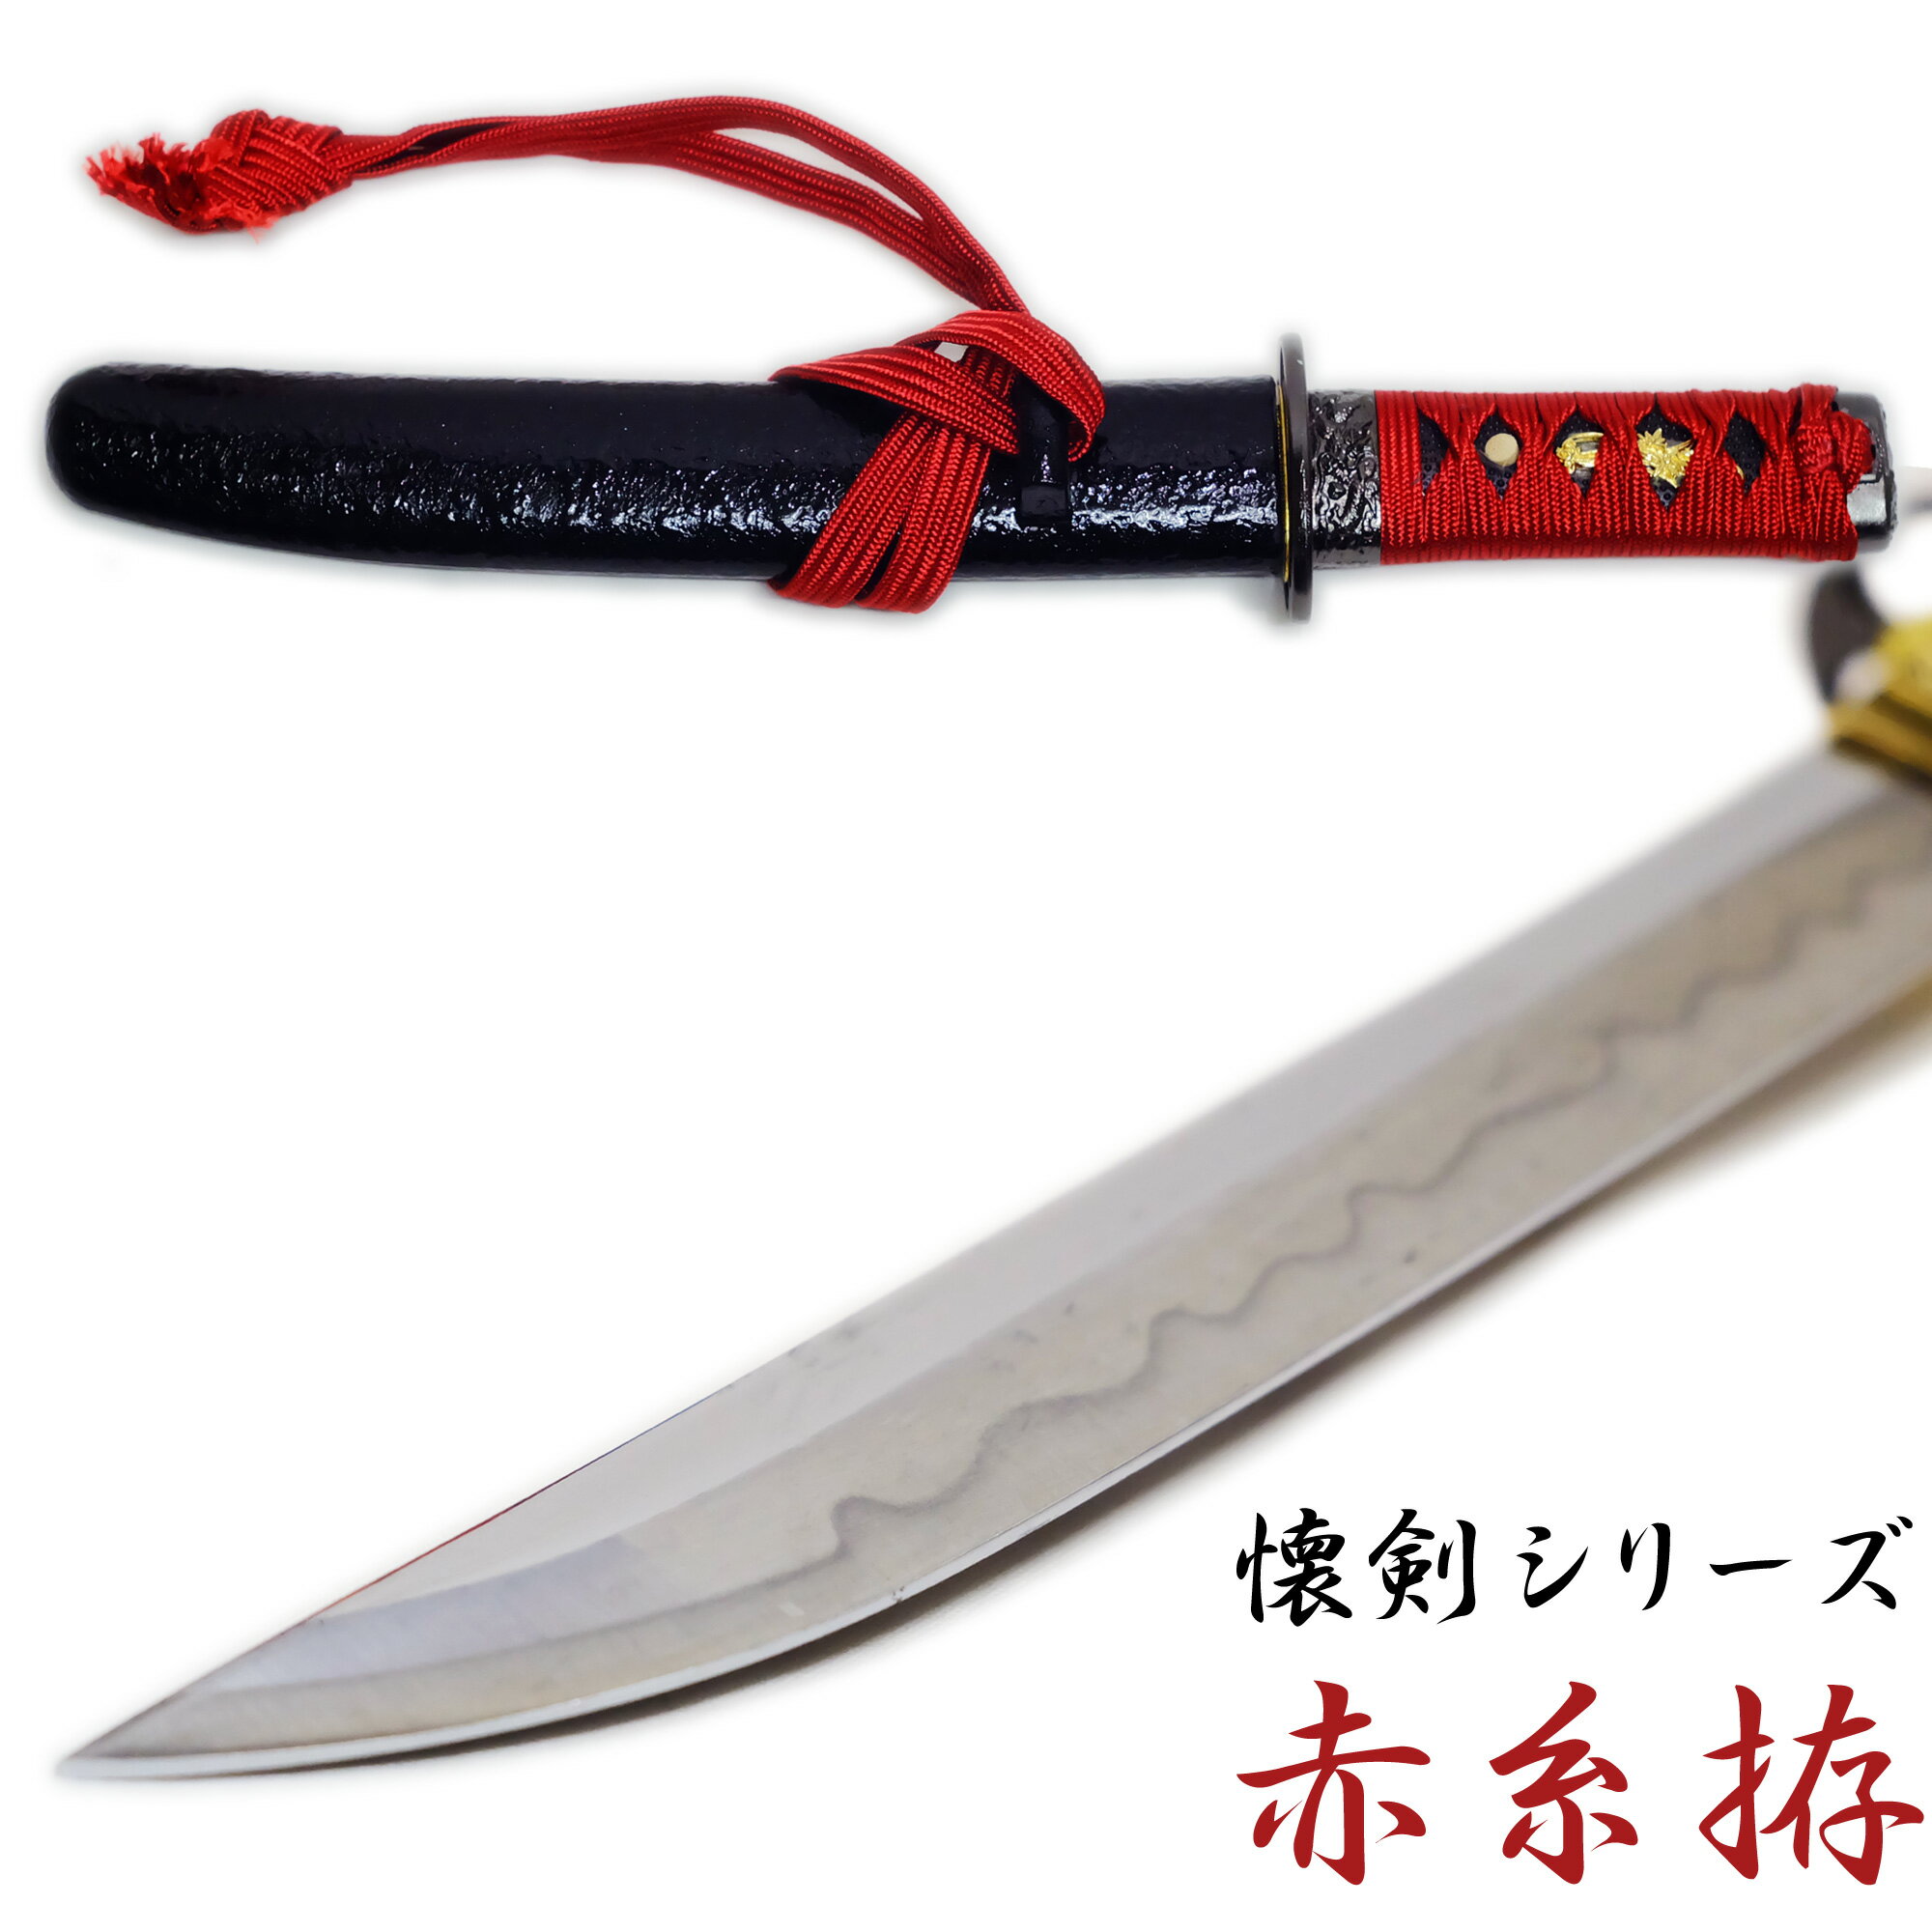 匠家 懐剣 赤糸拵 NEU-101RD - 懐剣シリーズ 模造刀 【送料無料】